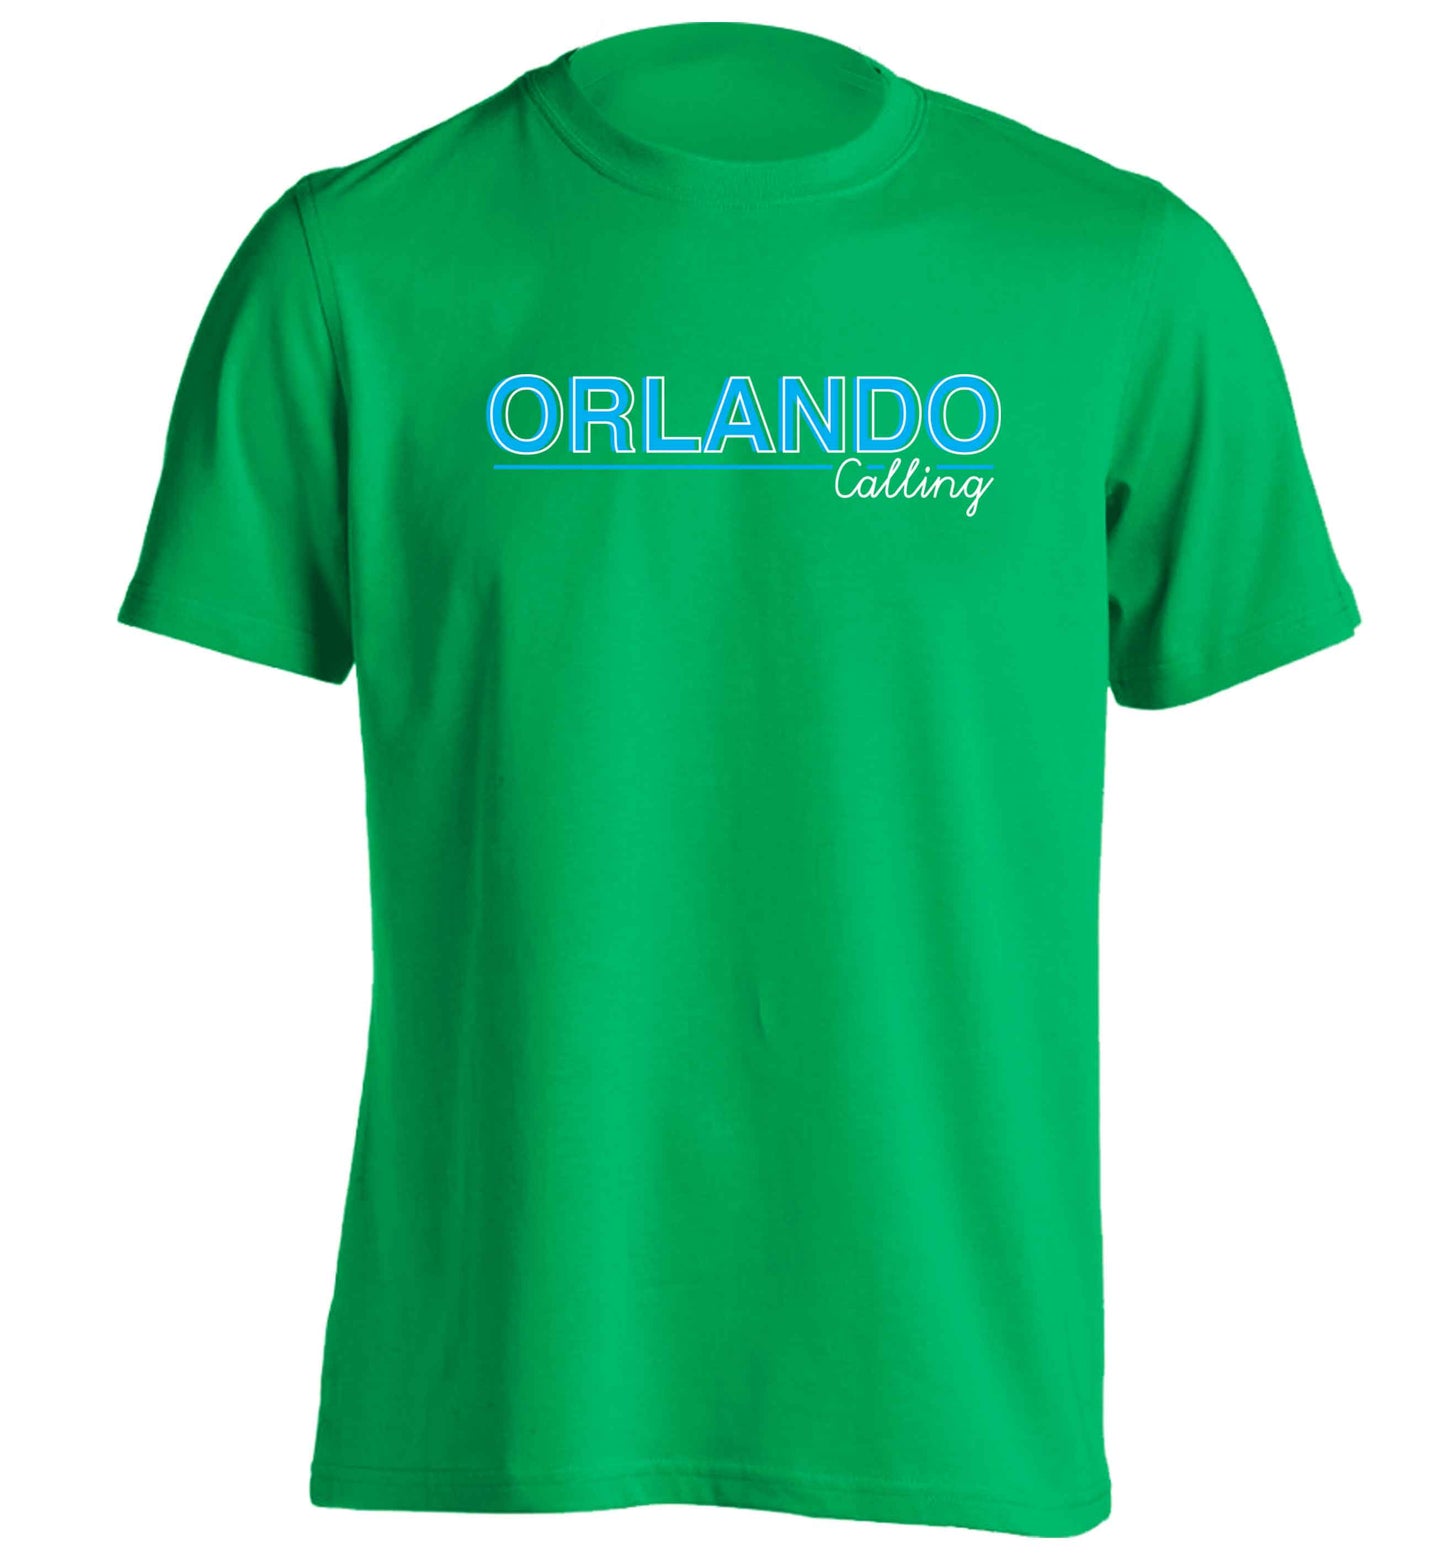 Orlando calling adults unisex green Tshirt 2XL